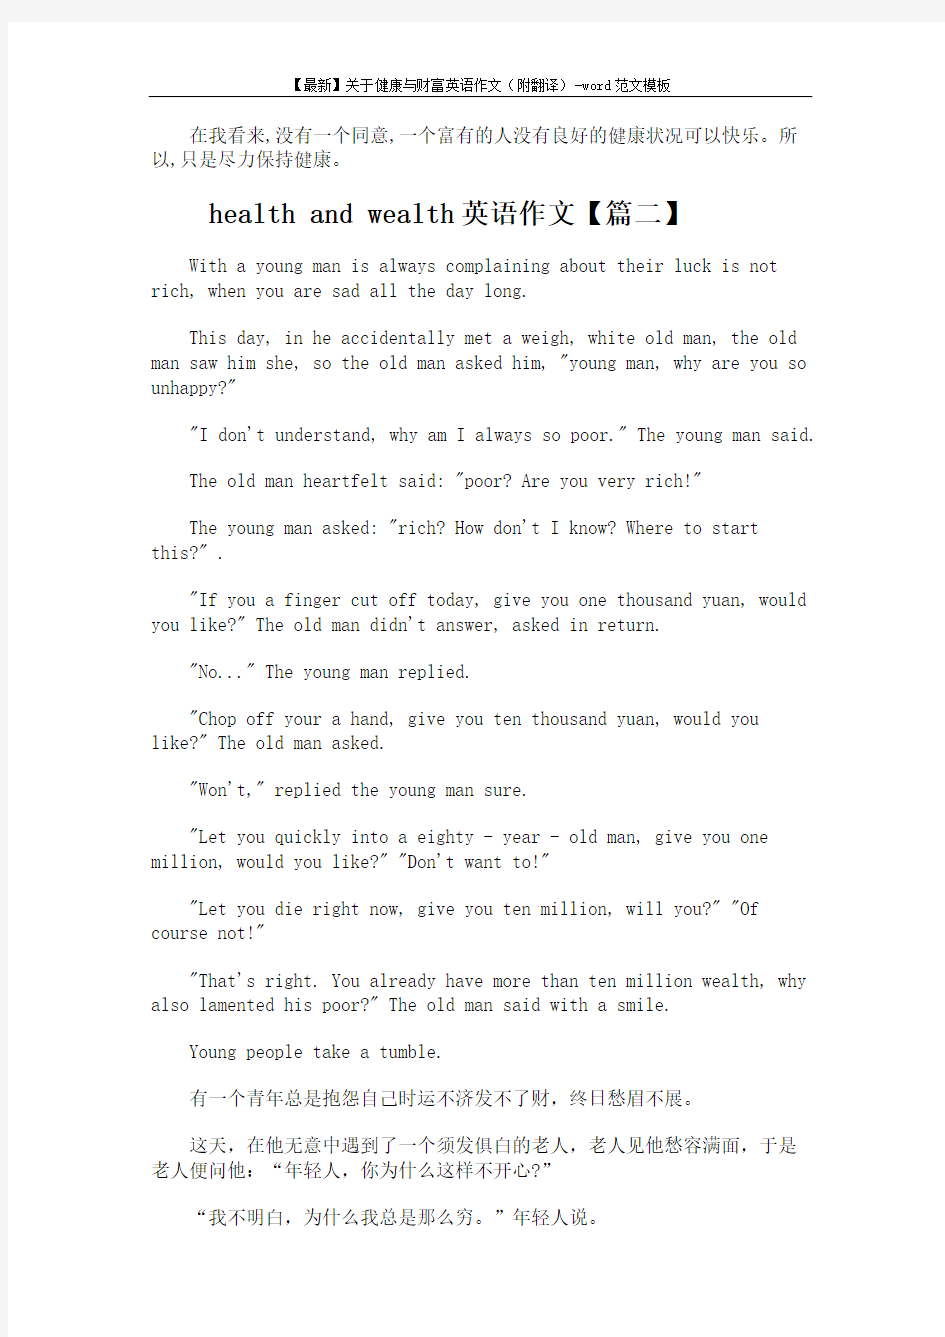 【最新】关于健康与财富英语作文(附翻译)-word范文模板 (3页)